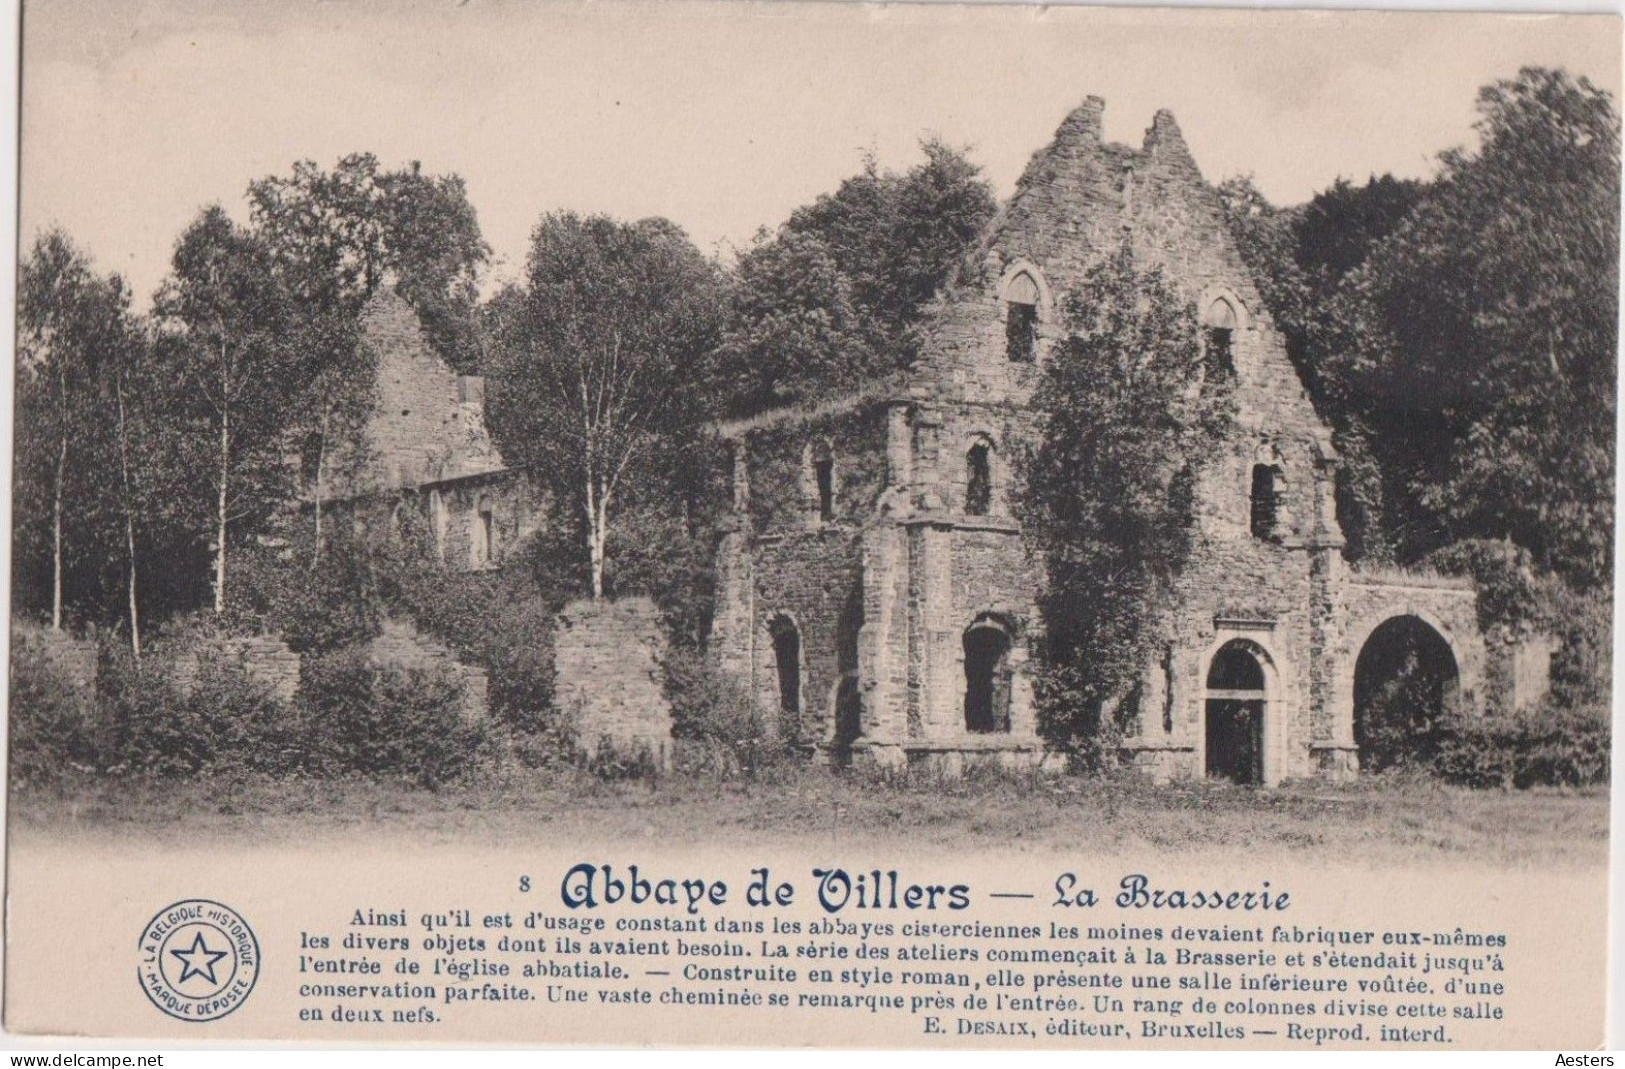 Waals-Brabant; Villers-la-Ville, 12 Cartes Postales différentes - 6 voyagé / 6 non voyagé. (24 scans)